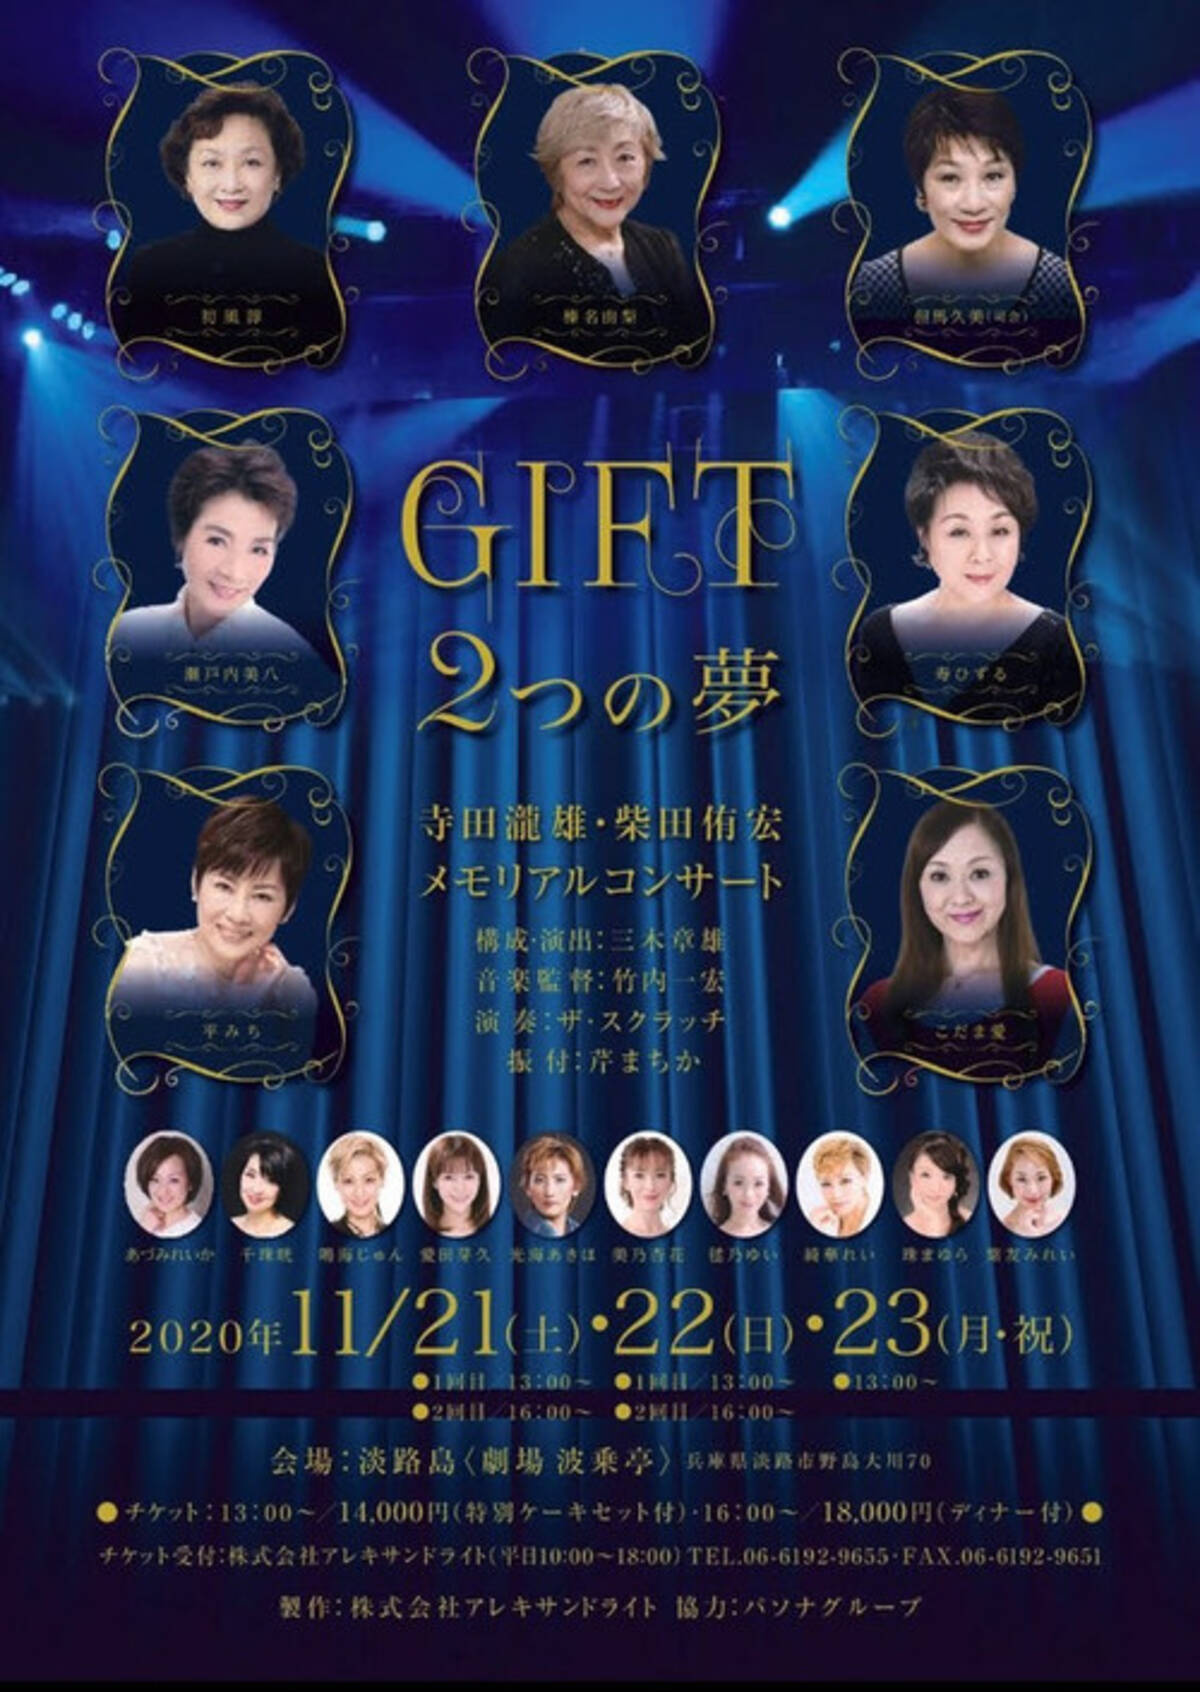 榛名由梨氏をはじめ元宝塚歌劇団のトップスターが一堂に集結 特別公演 Gift2つの夢 年11月17日 エキサイトニュース